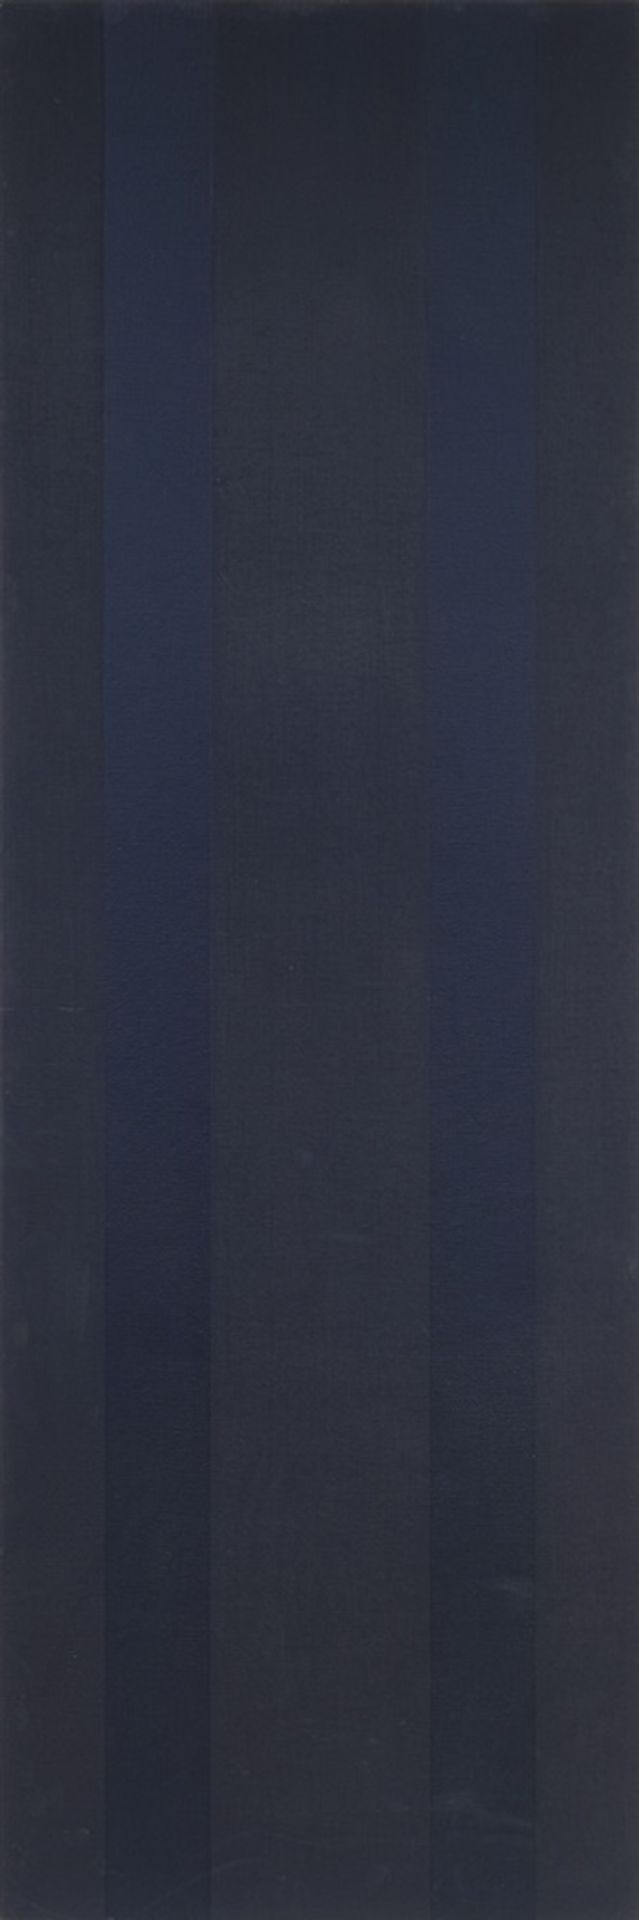 FRANK BADUR 1944 OHNE TITEL 1978 Triptychon. 3 Gemälde, Öl auf Leinwand, auf Holz. Jeweils - Image 3 of 3